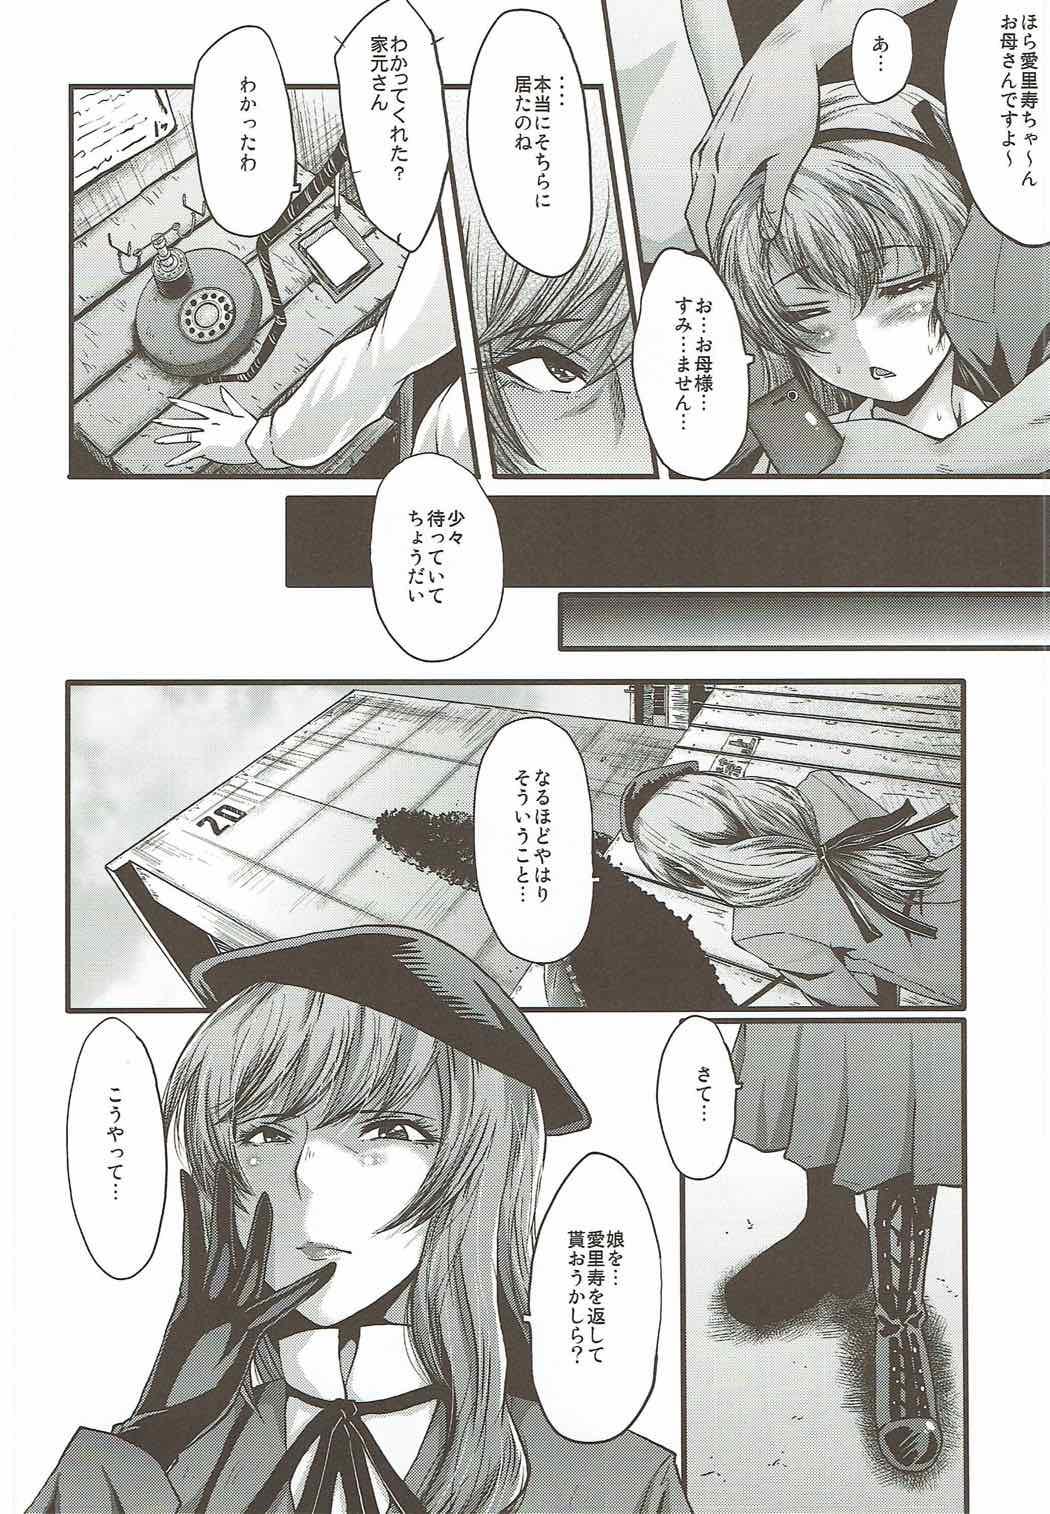 Assfuck Urabambi Vol. 55 Yuukan Madam no Shiroi Niku - Girls und panzer Teen Sex - Page 3